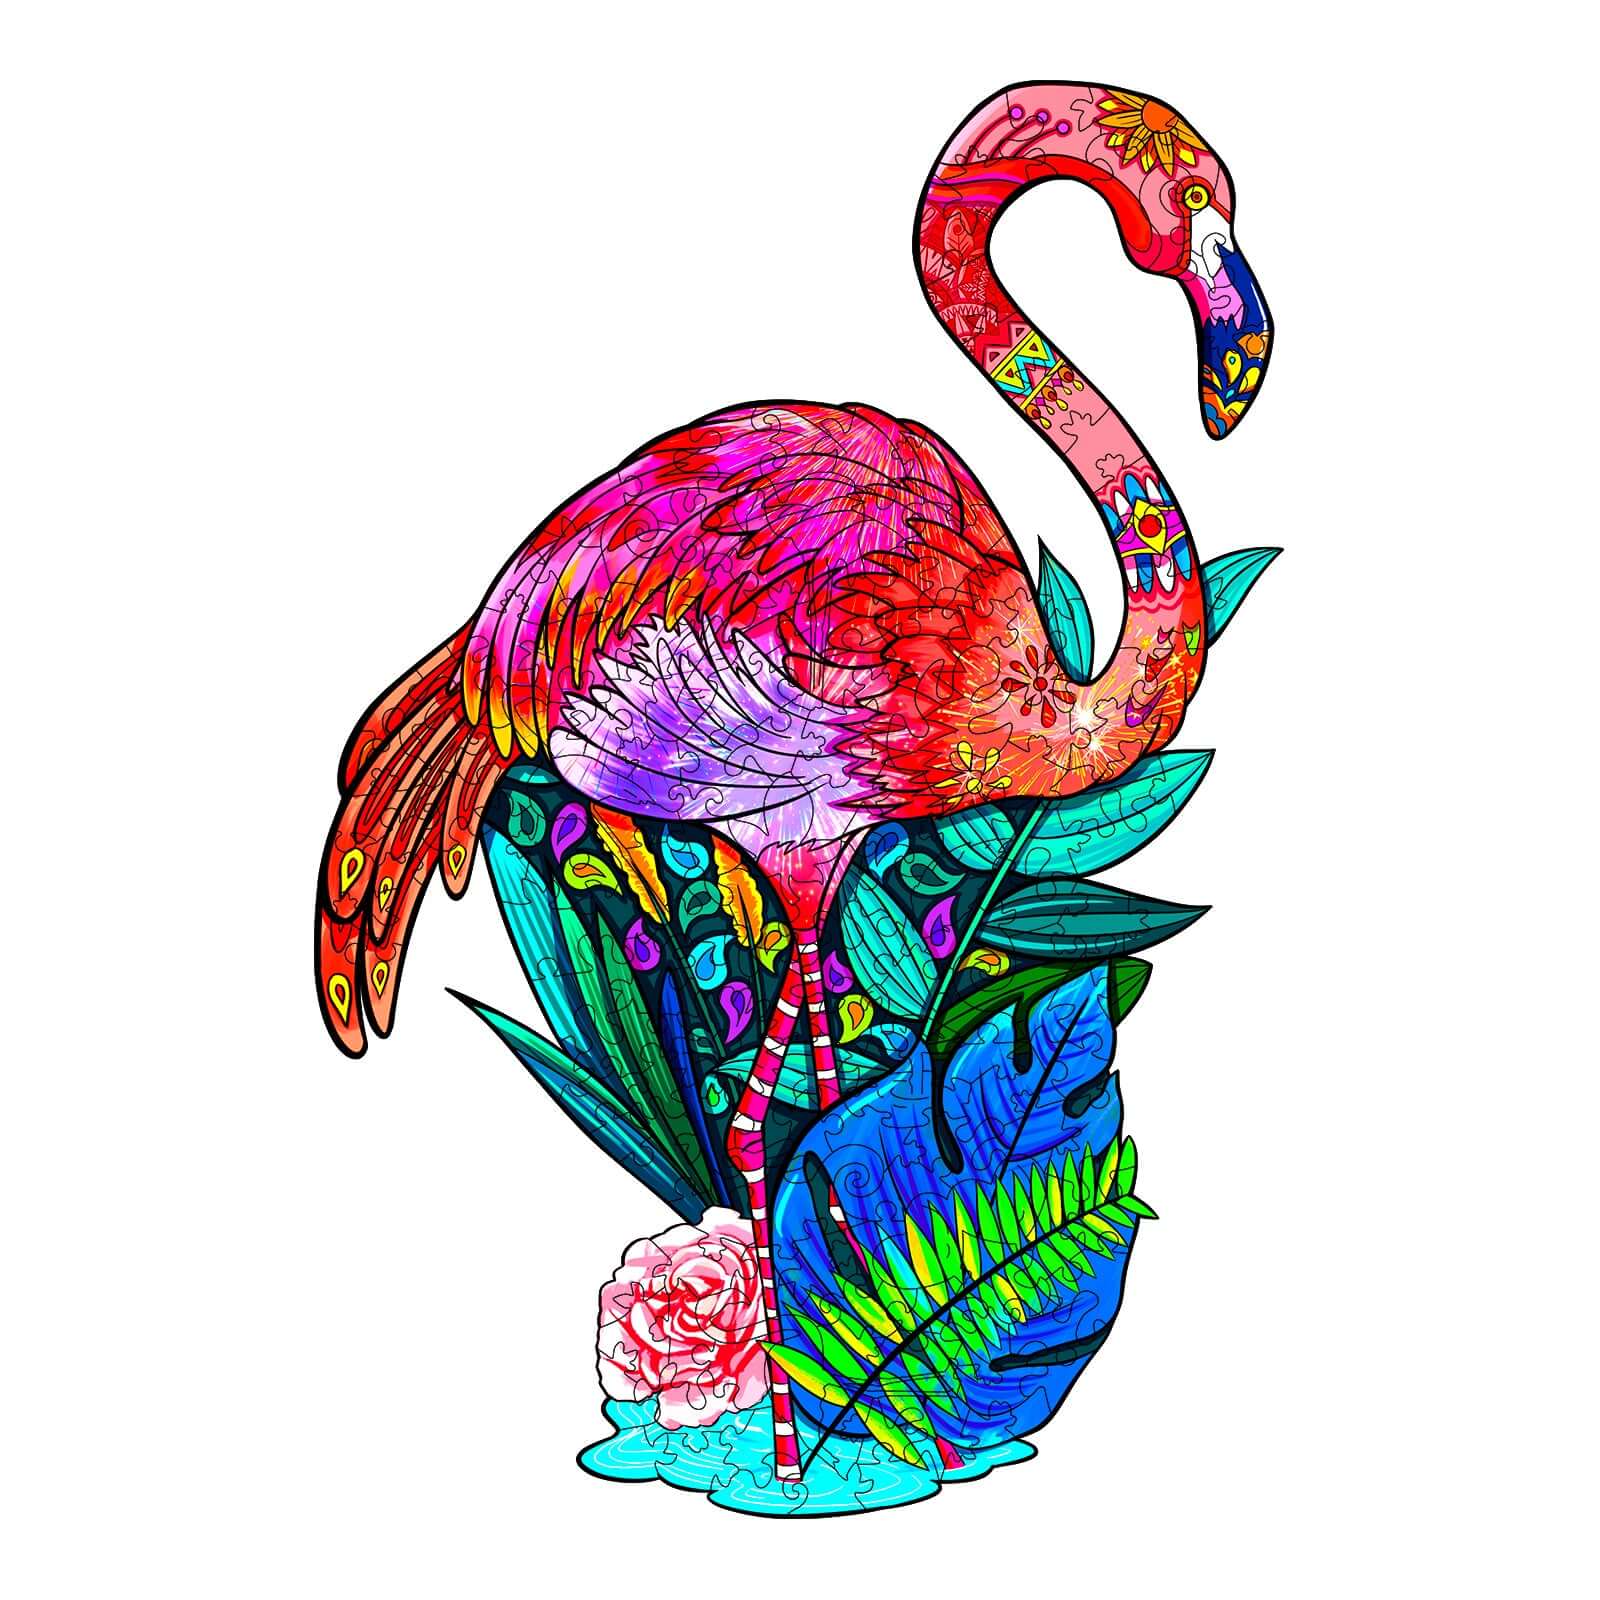 Alion-fa-puzzle-fa-kirako-fa-puzzle-alion-nagy-meretu-fa-flamingo-fa-puzzle-flamingo-kirako-rendeles-jatek-vasarlas-fa-puzzle-flamingo-fa-puzzle-flamingo-flamingo